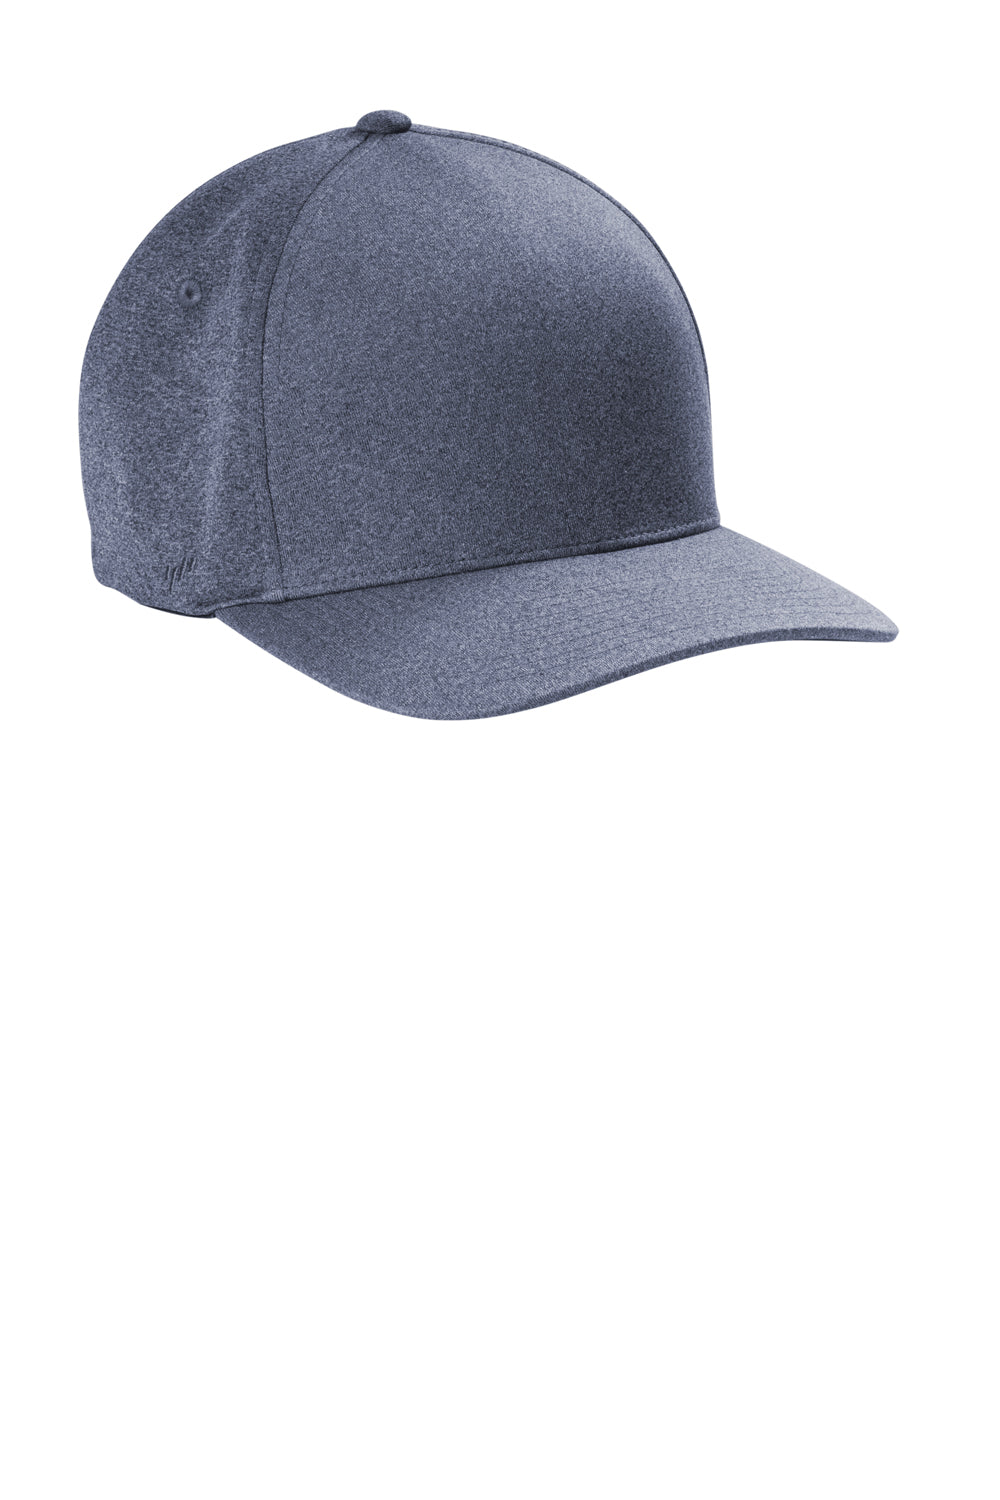 Port Authority C946 Melange Unipanel Flexfit Hat Navy Blue Back